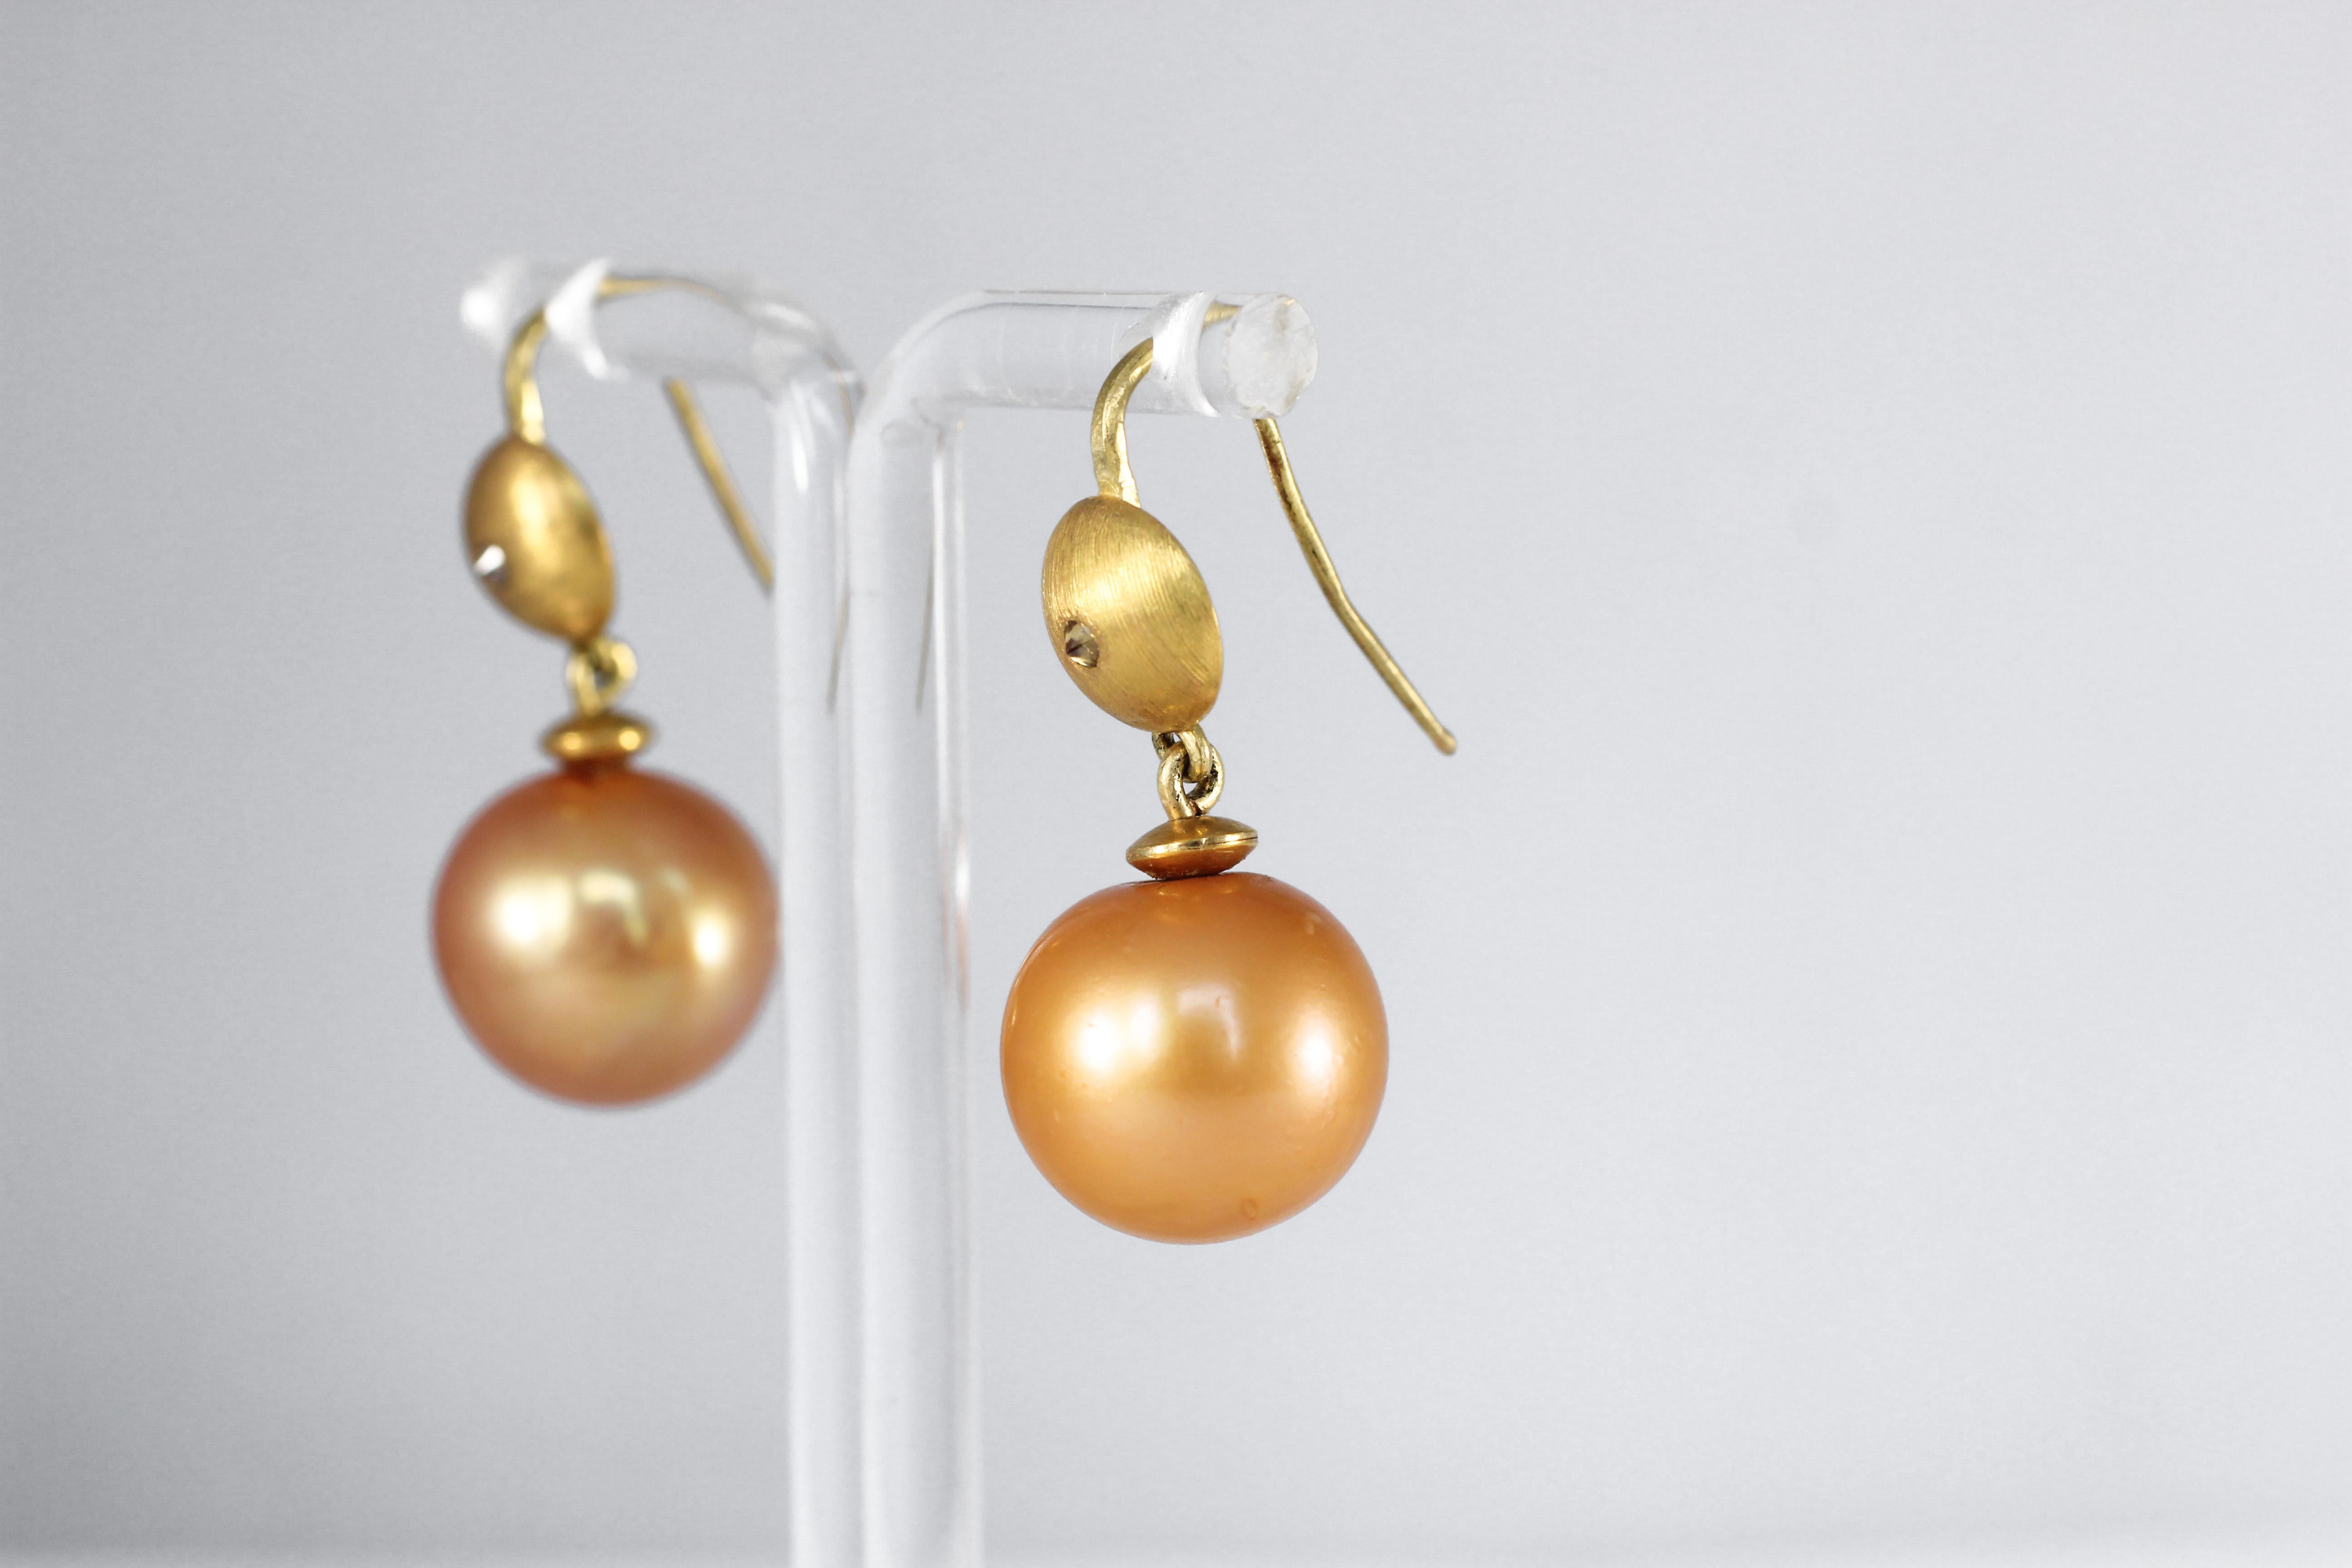 Goldene Eve-Tropfen-Ohrringe. Diese eleganten, modernen Ohrringe aus 21-karätigem Gold sind eine Aktualisierung eines Klassikers. Das Wunder der Natur, eine 15 mm große, gold-orangefarbene Südseeperle, spiegelt sich in einer eingravierten goldenen